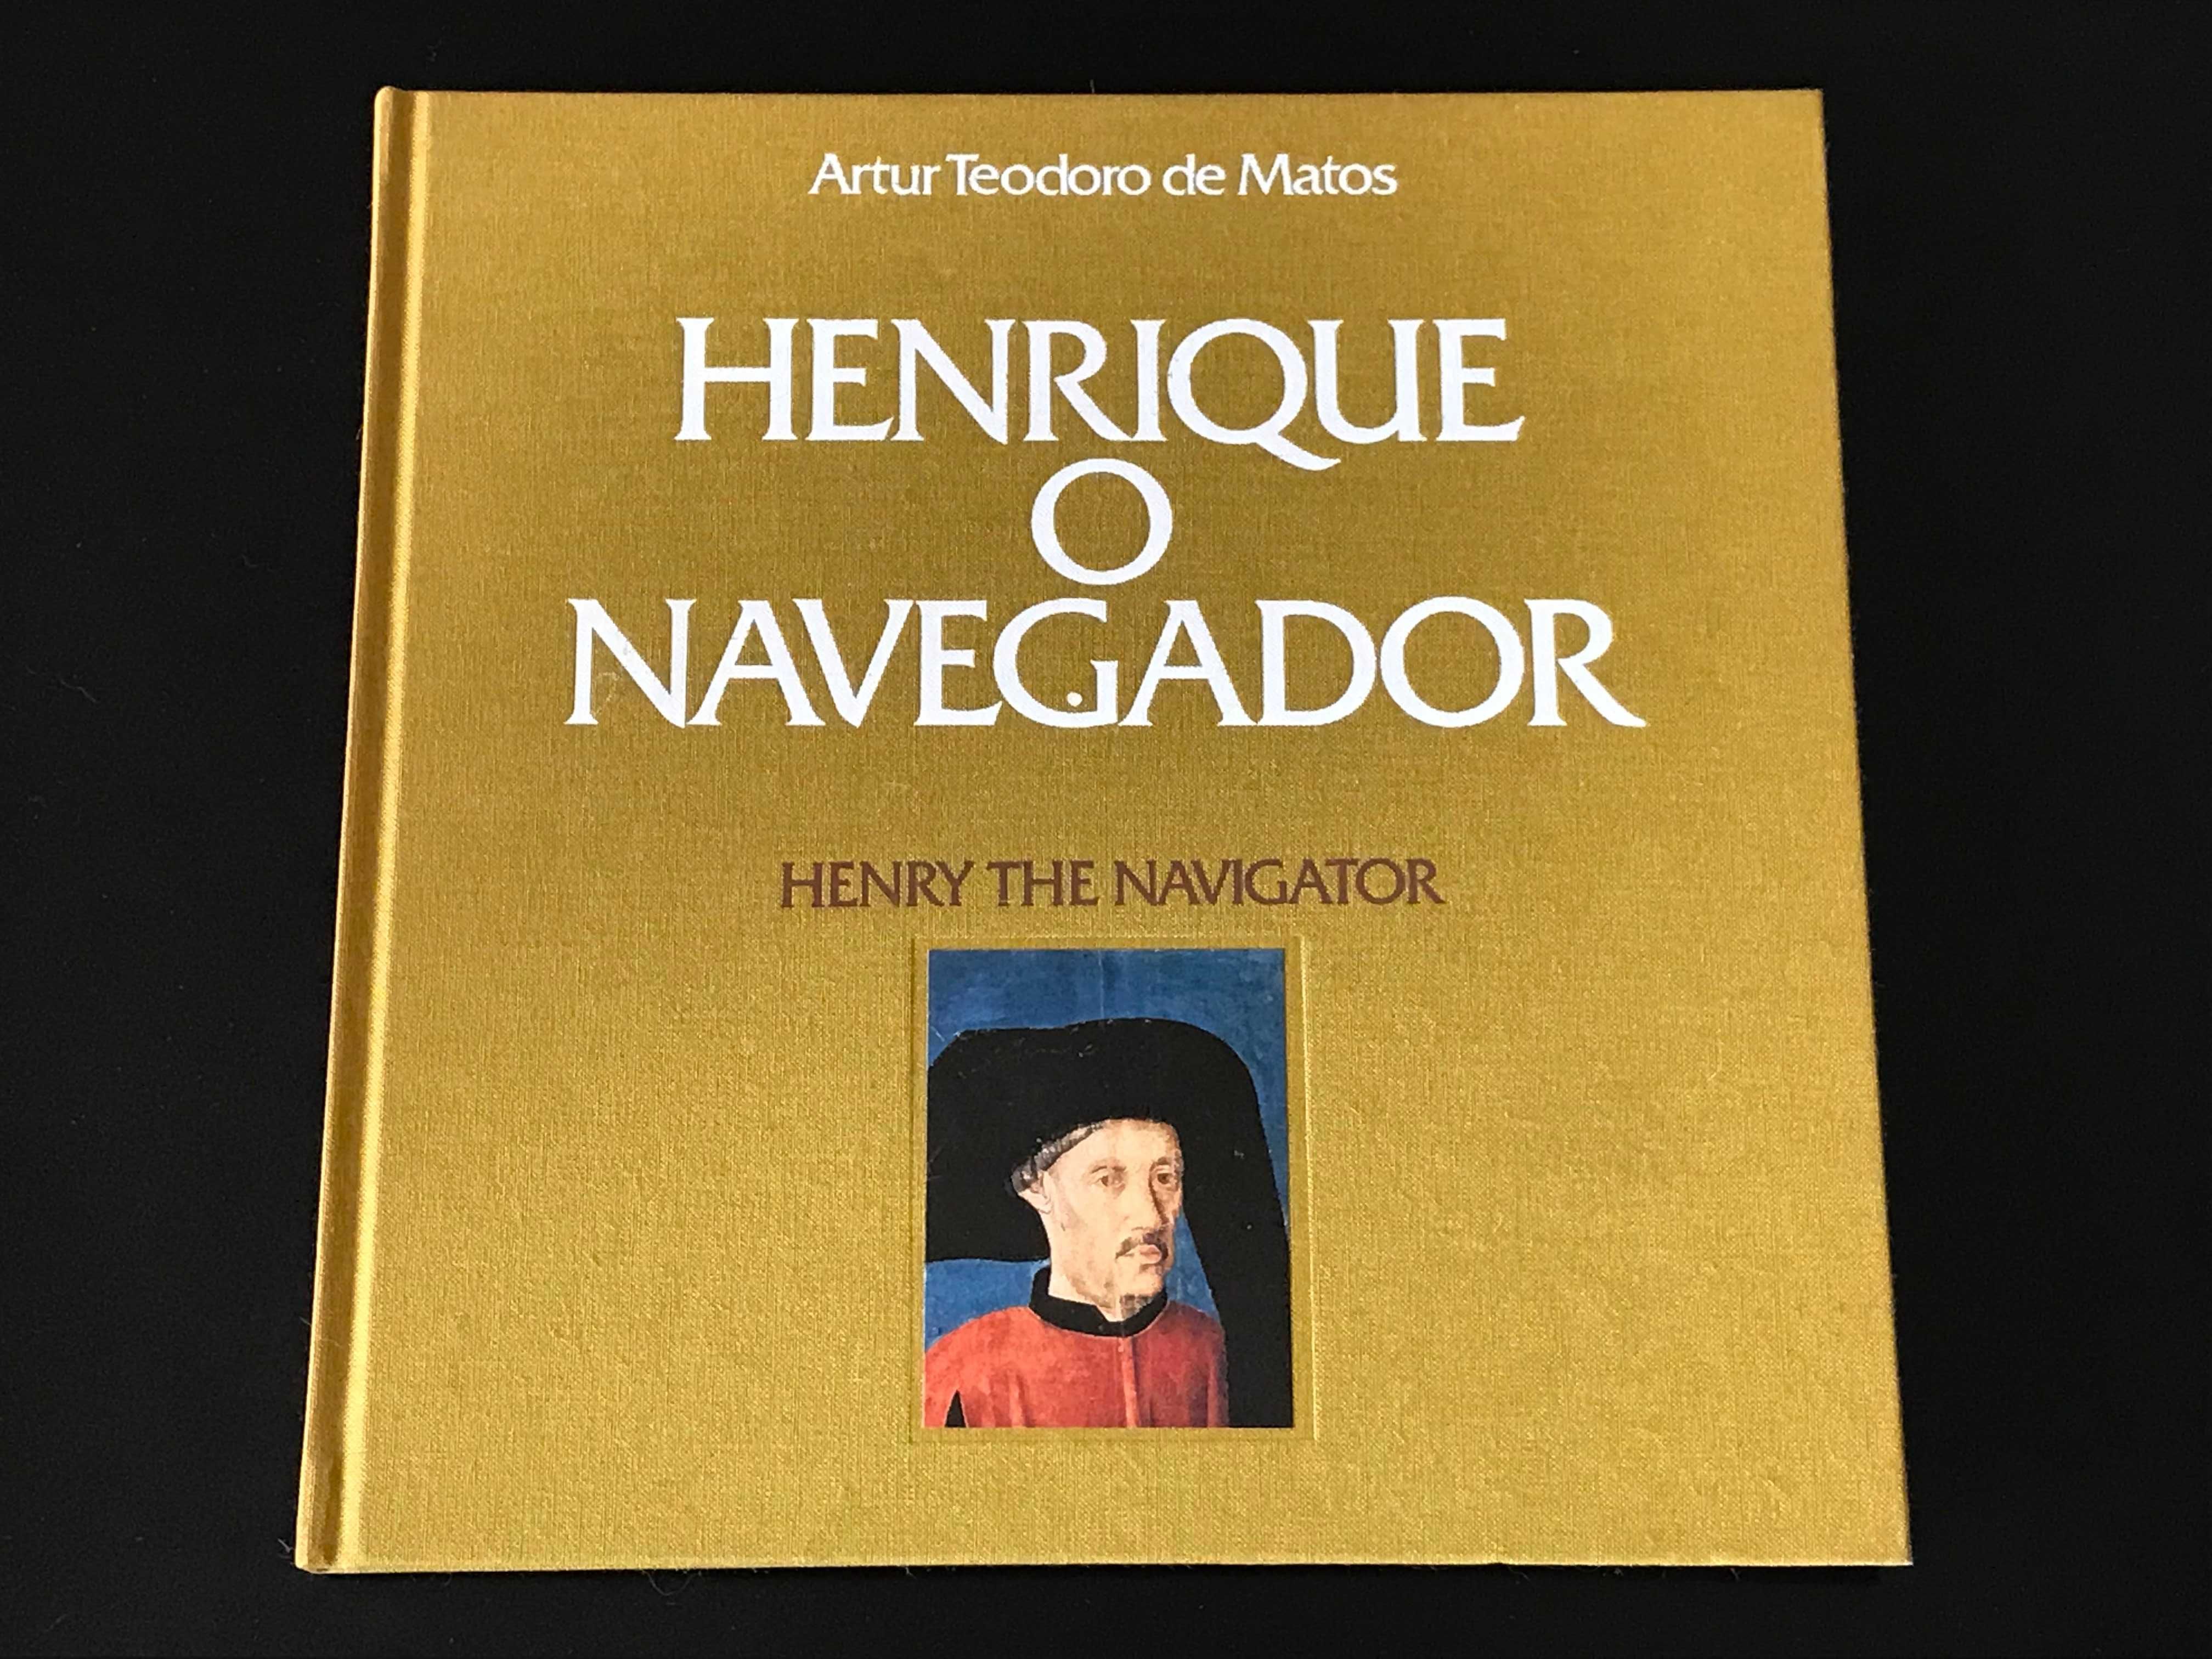 Livro CTT "Henrique o Navegador" - Filatelia